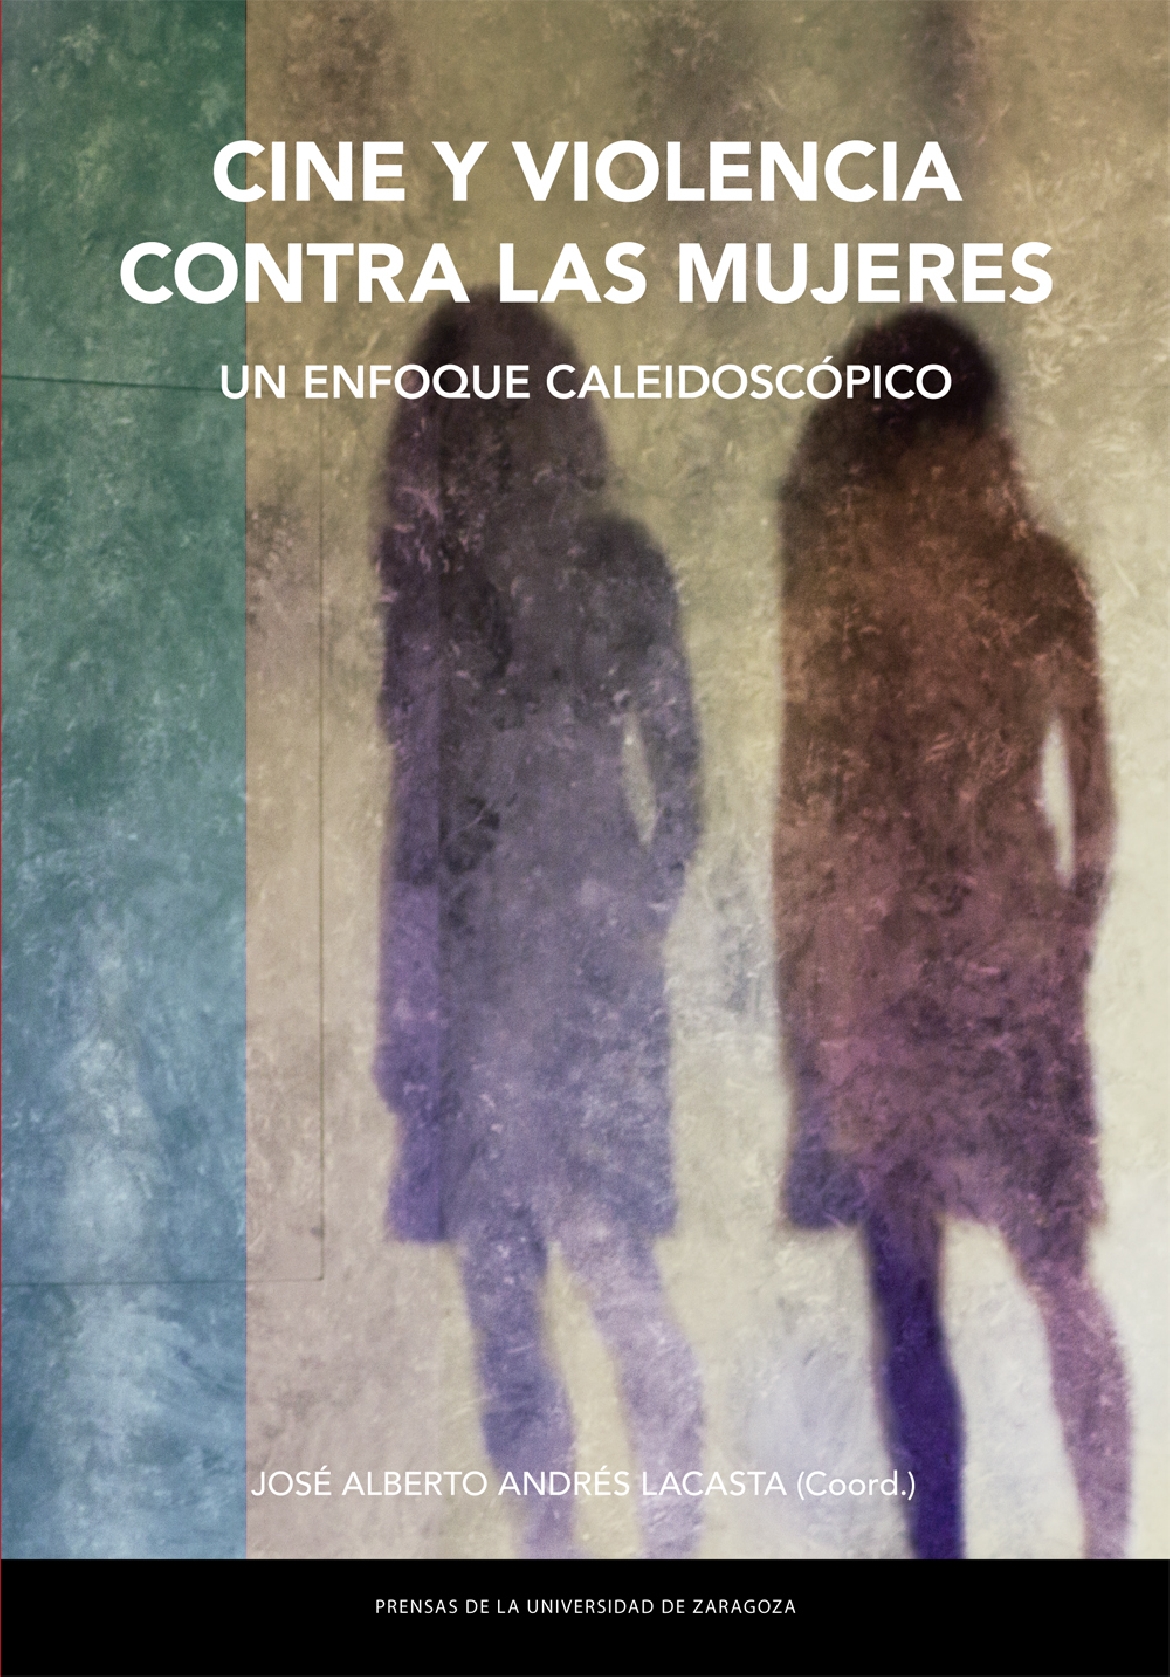 Presentación del libro "CINE Y VIOLENCIA CONTRA LAS MUJERES. Un enfoque caleidoscópico", coordinado por José Alberto Andrés Lacasta